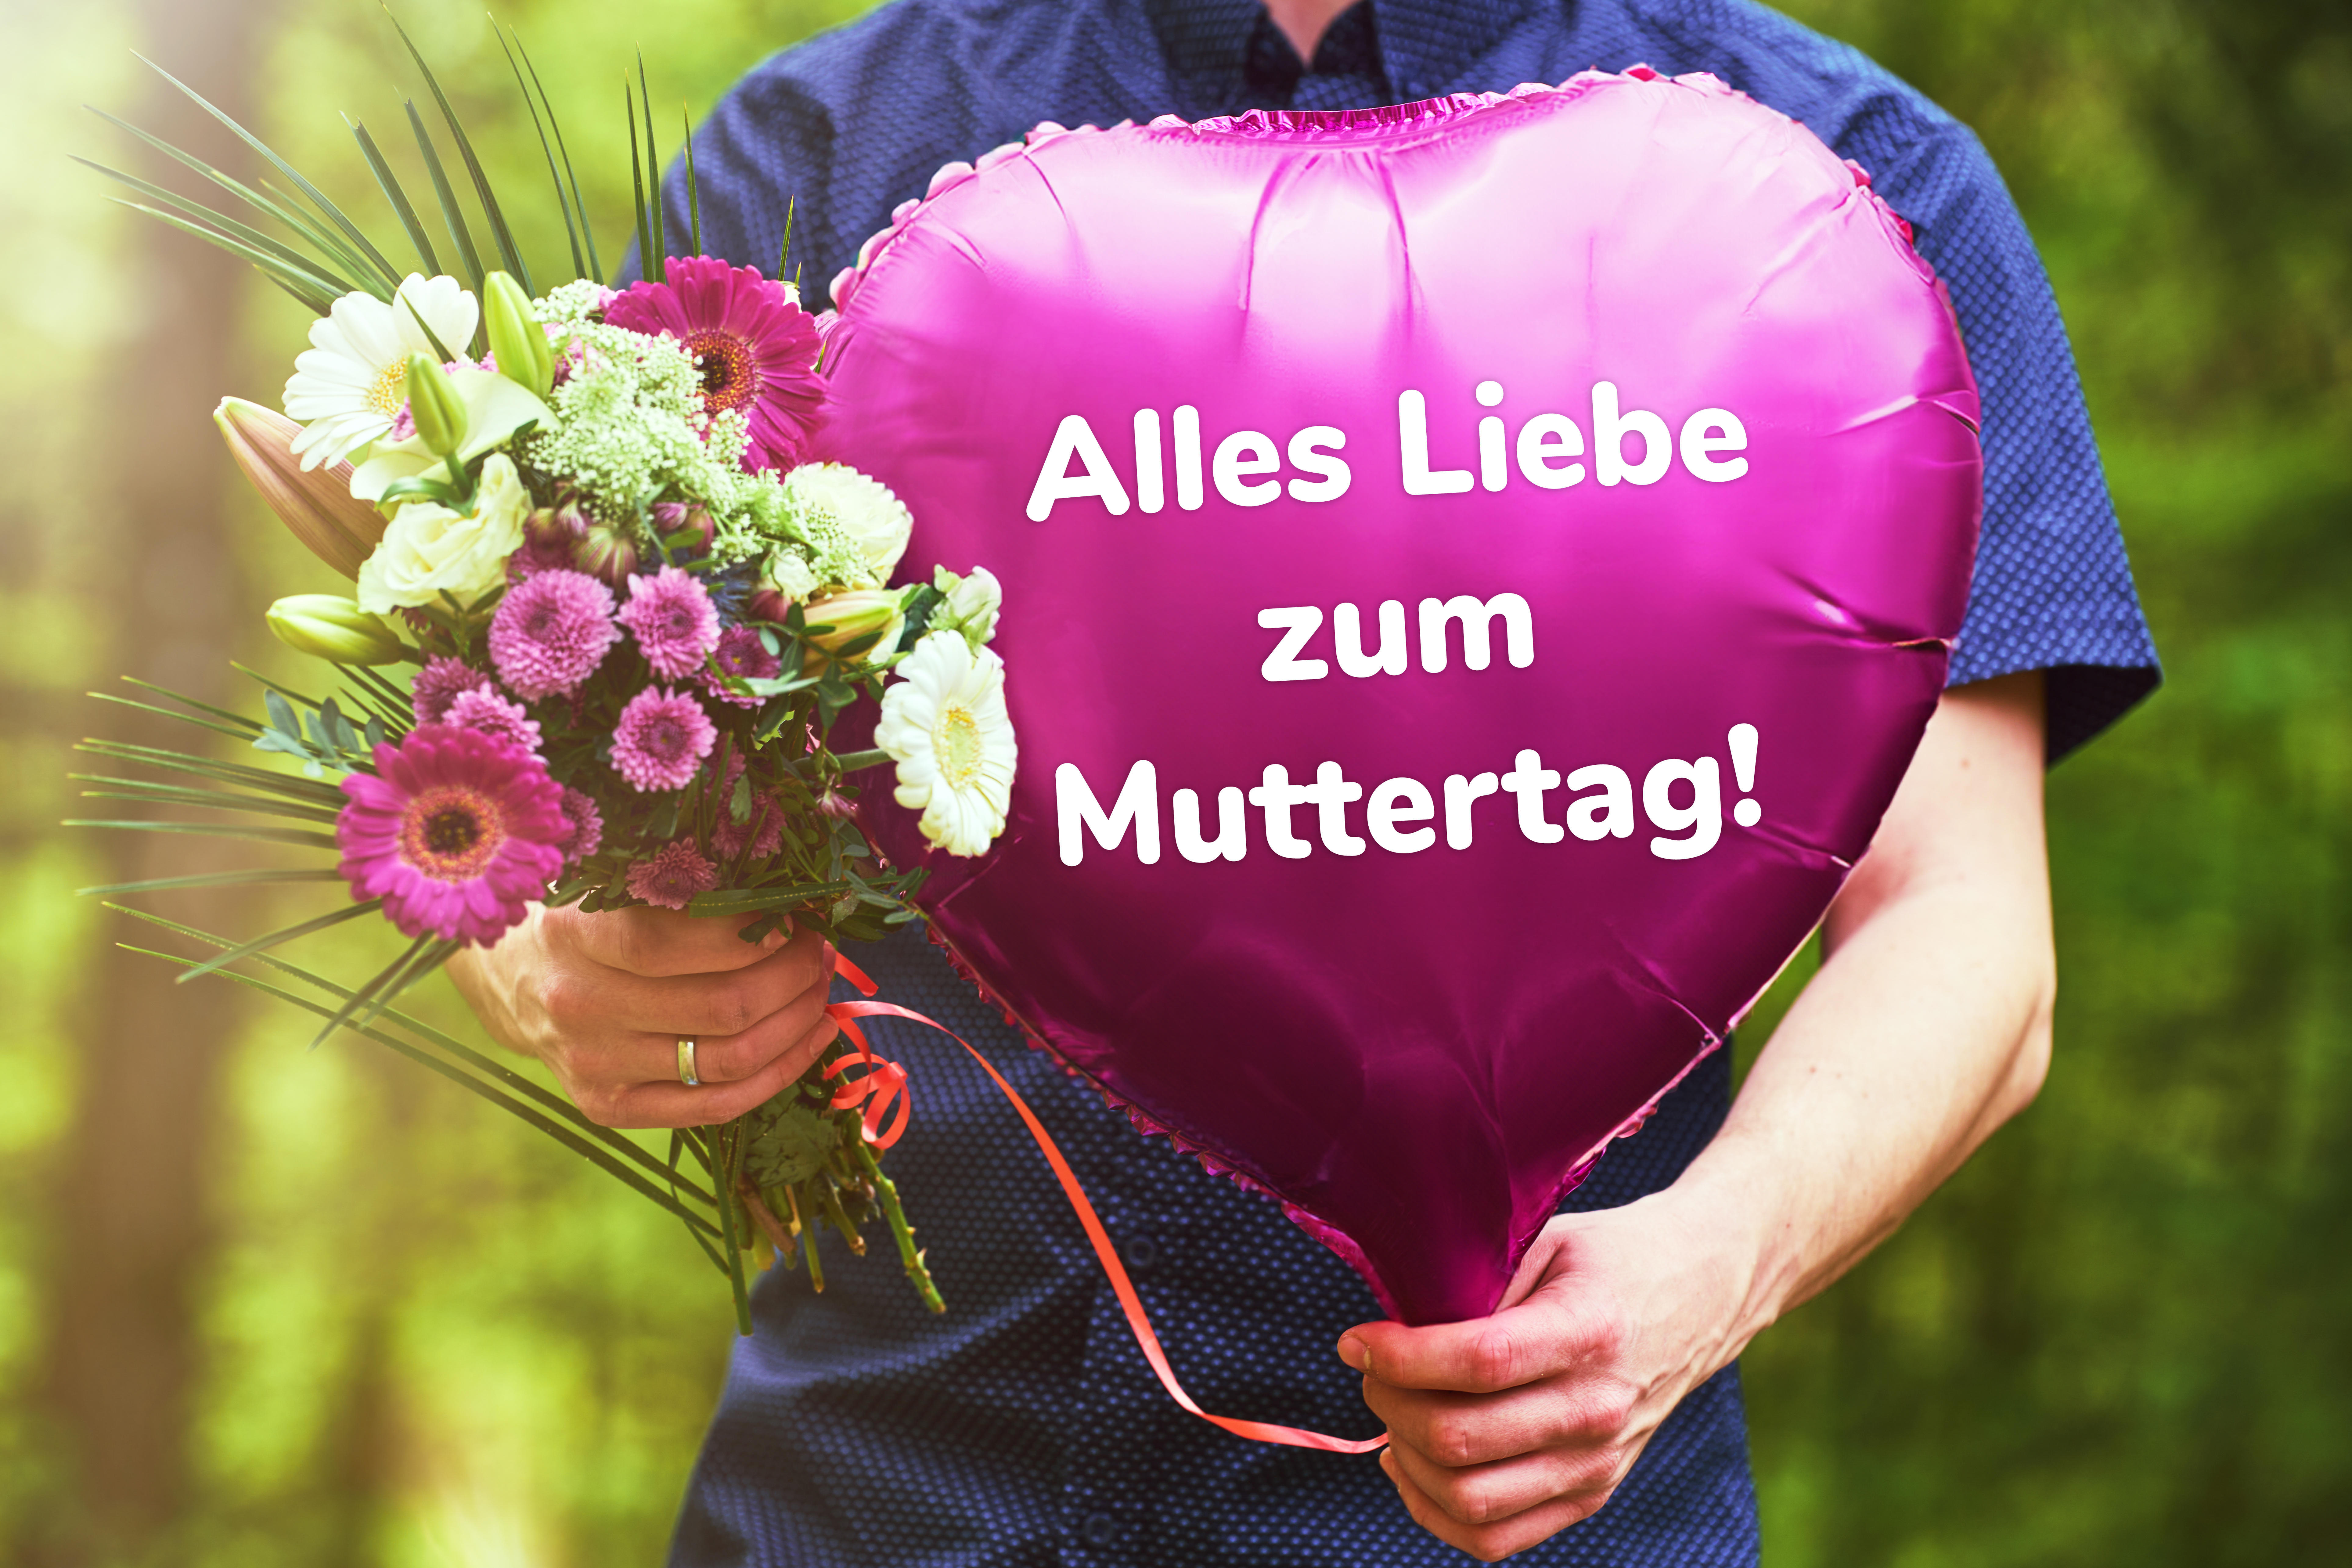 Mann hält Luftballon mit Aufschrift „Alles Liebe zum Muttertag“und Blumenstrauß